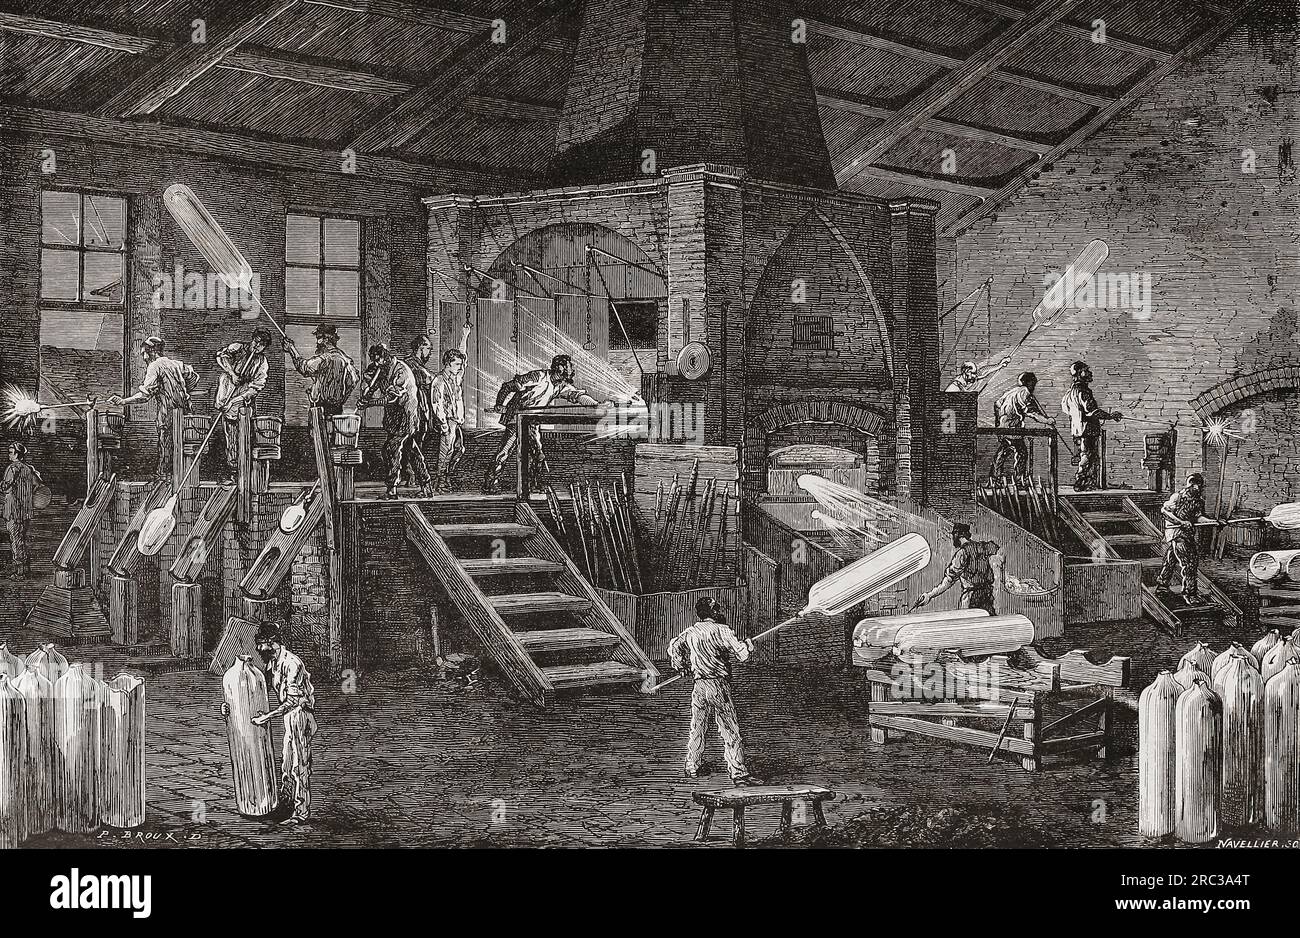 usine de verre du 19e siècle produisant des cylindres en verre. D'après une illustration dans les merveilles de l'industrie, par Louis Figuier, publiée en 1877. Banque D'Images